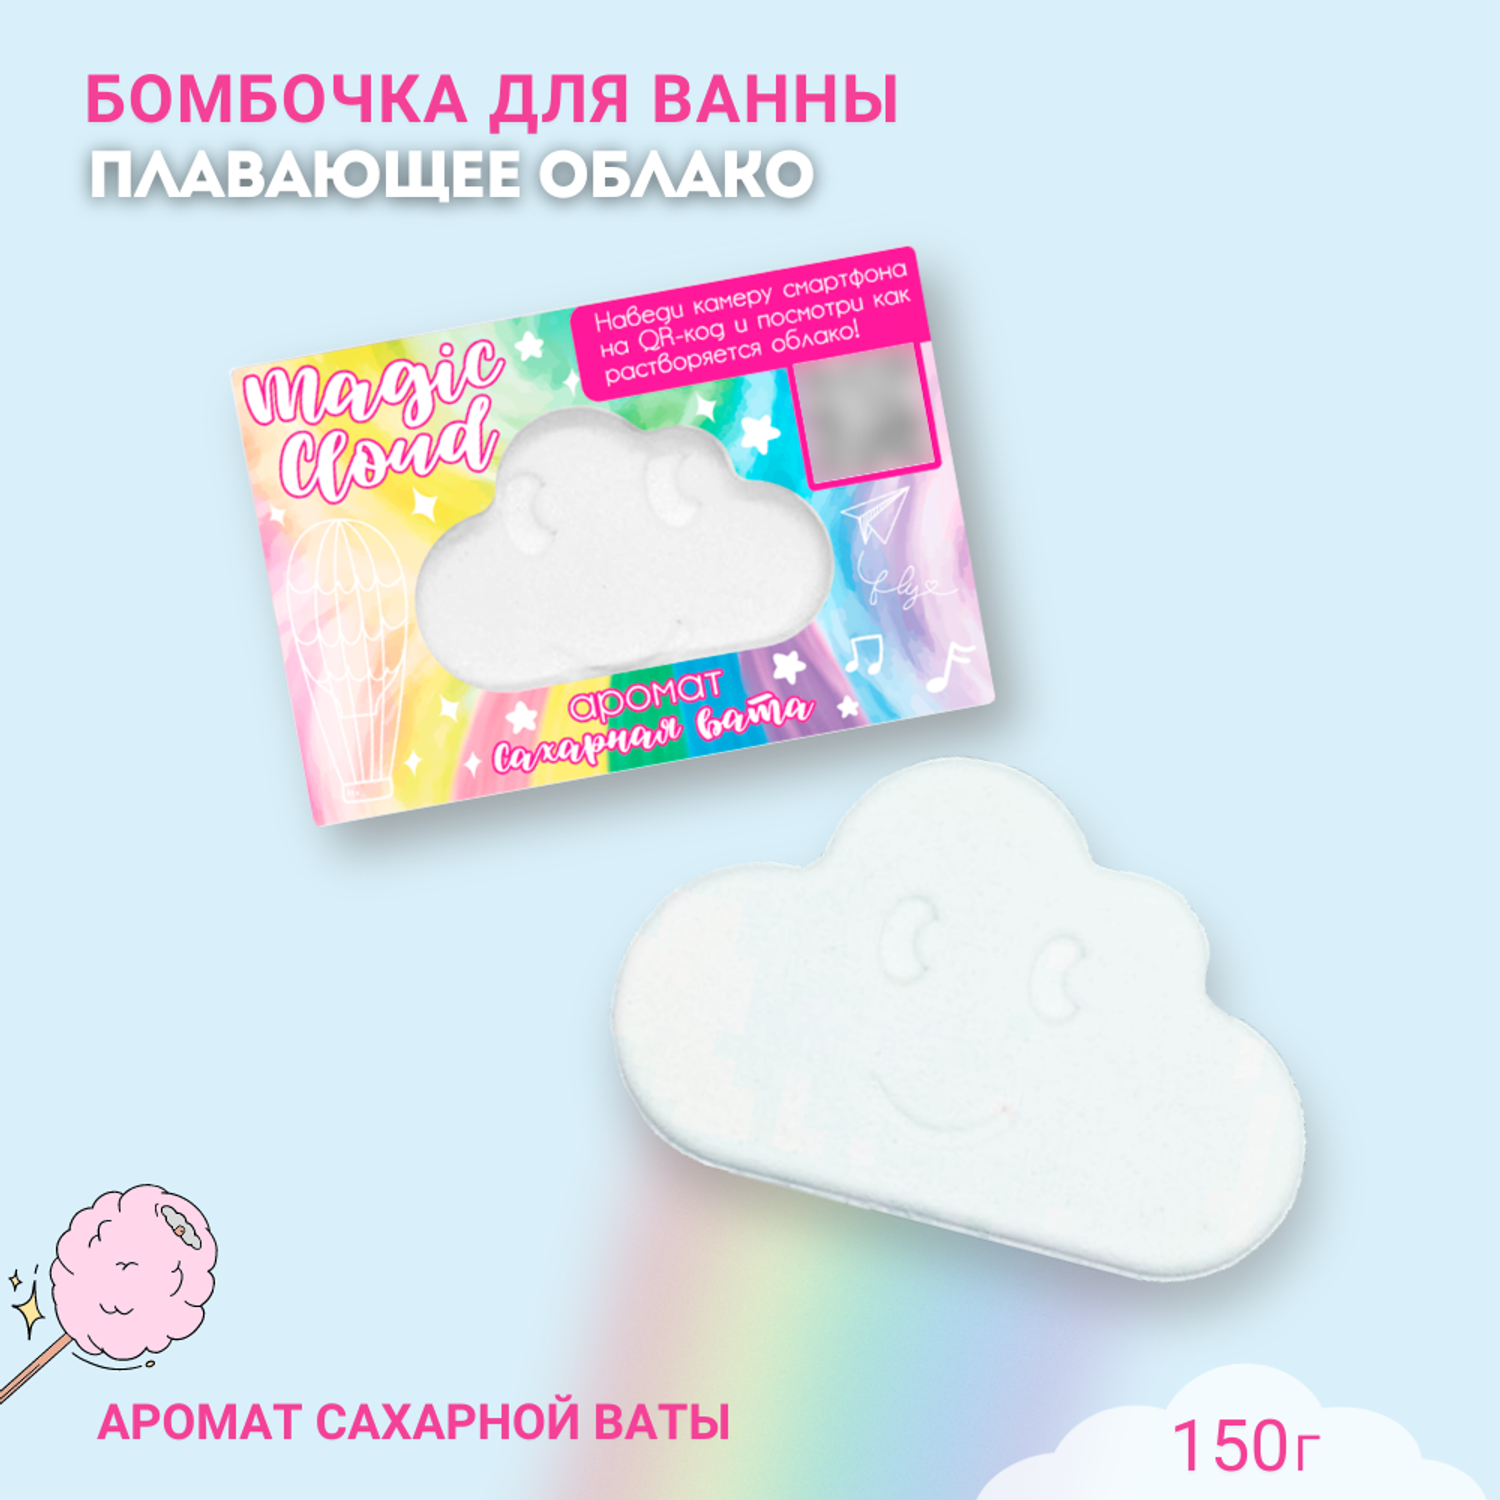 Бомбочка для ванны Laboratory KATRIN Magic Cloud облако с пеной и цветными вставками 150г - фото 1